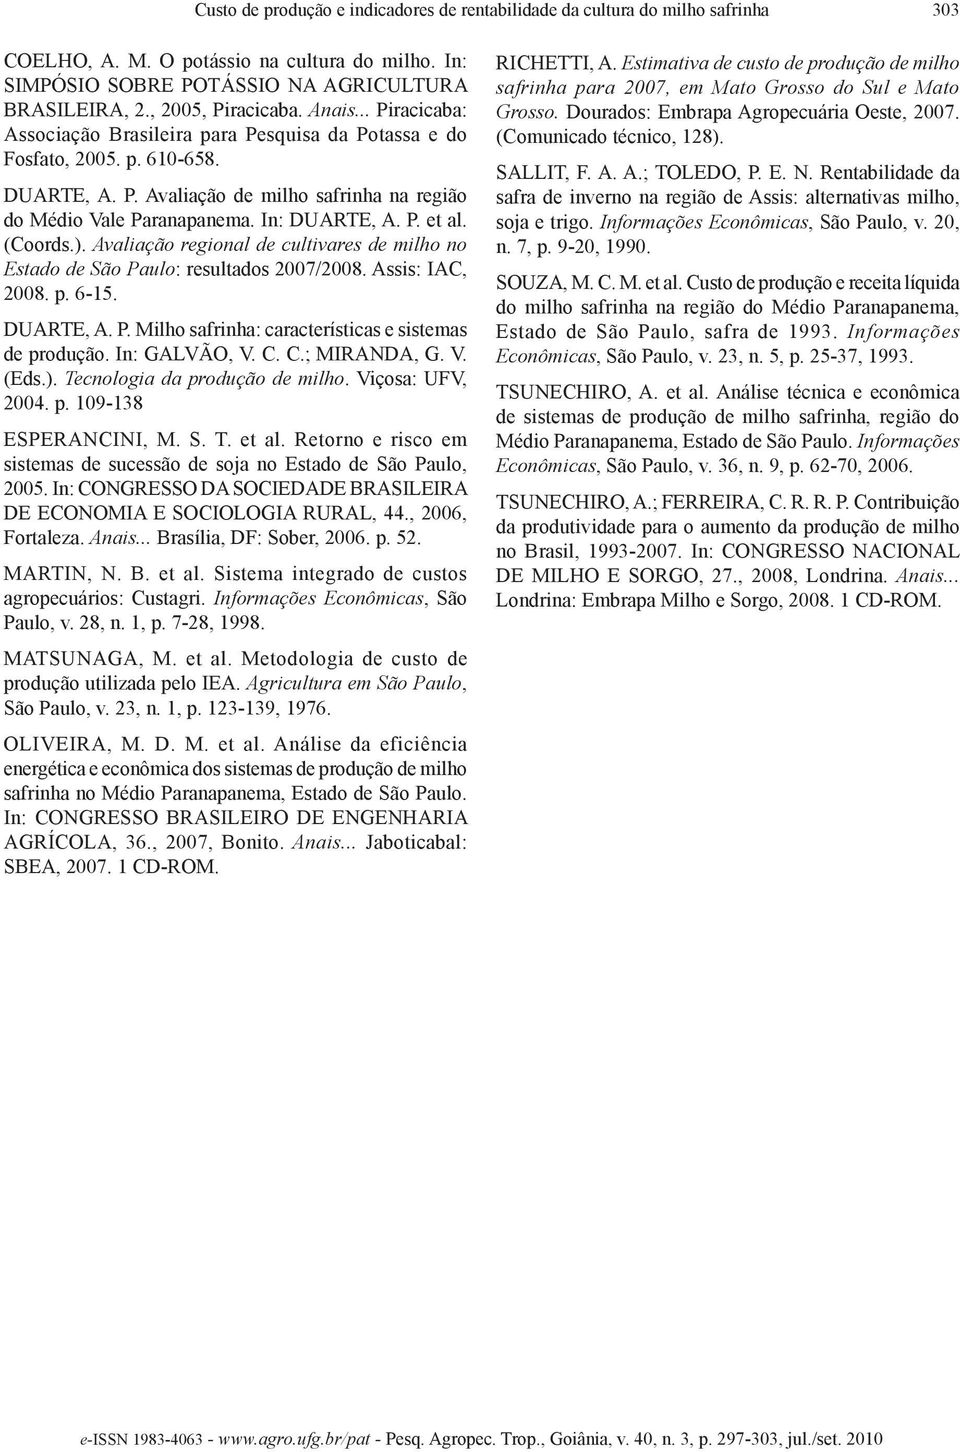 In: DUARTE, A. P. et al. (Coords.). Avaliação regional de cultivares de milho no Estado de São Paulo: resultados 2007/2008. Assis: IAC, 2008. p. 6-15. DUARTE, A. P. Milho safrinha: características e sistemas de produção.